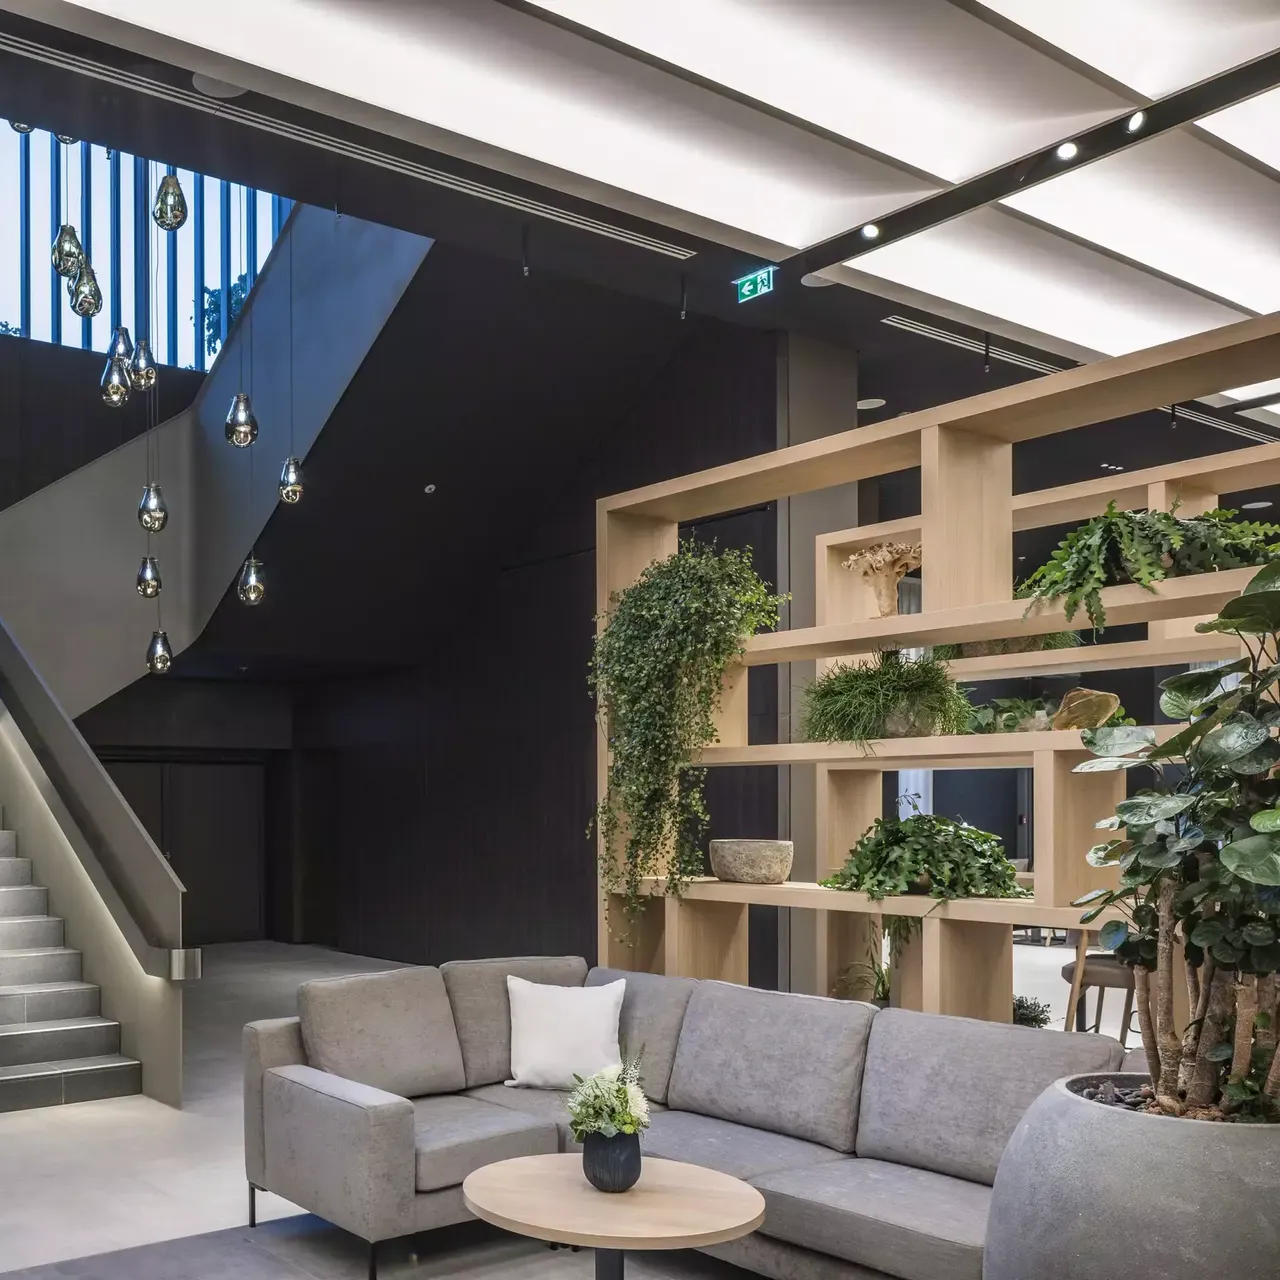 Innenansicht: Es wird die Lobby des Melia Hotels in der hausInvest Immobilie One Forty West in Frankfurt am Main abgebildet